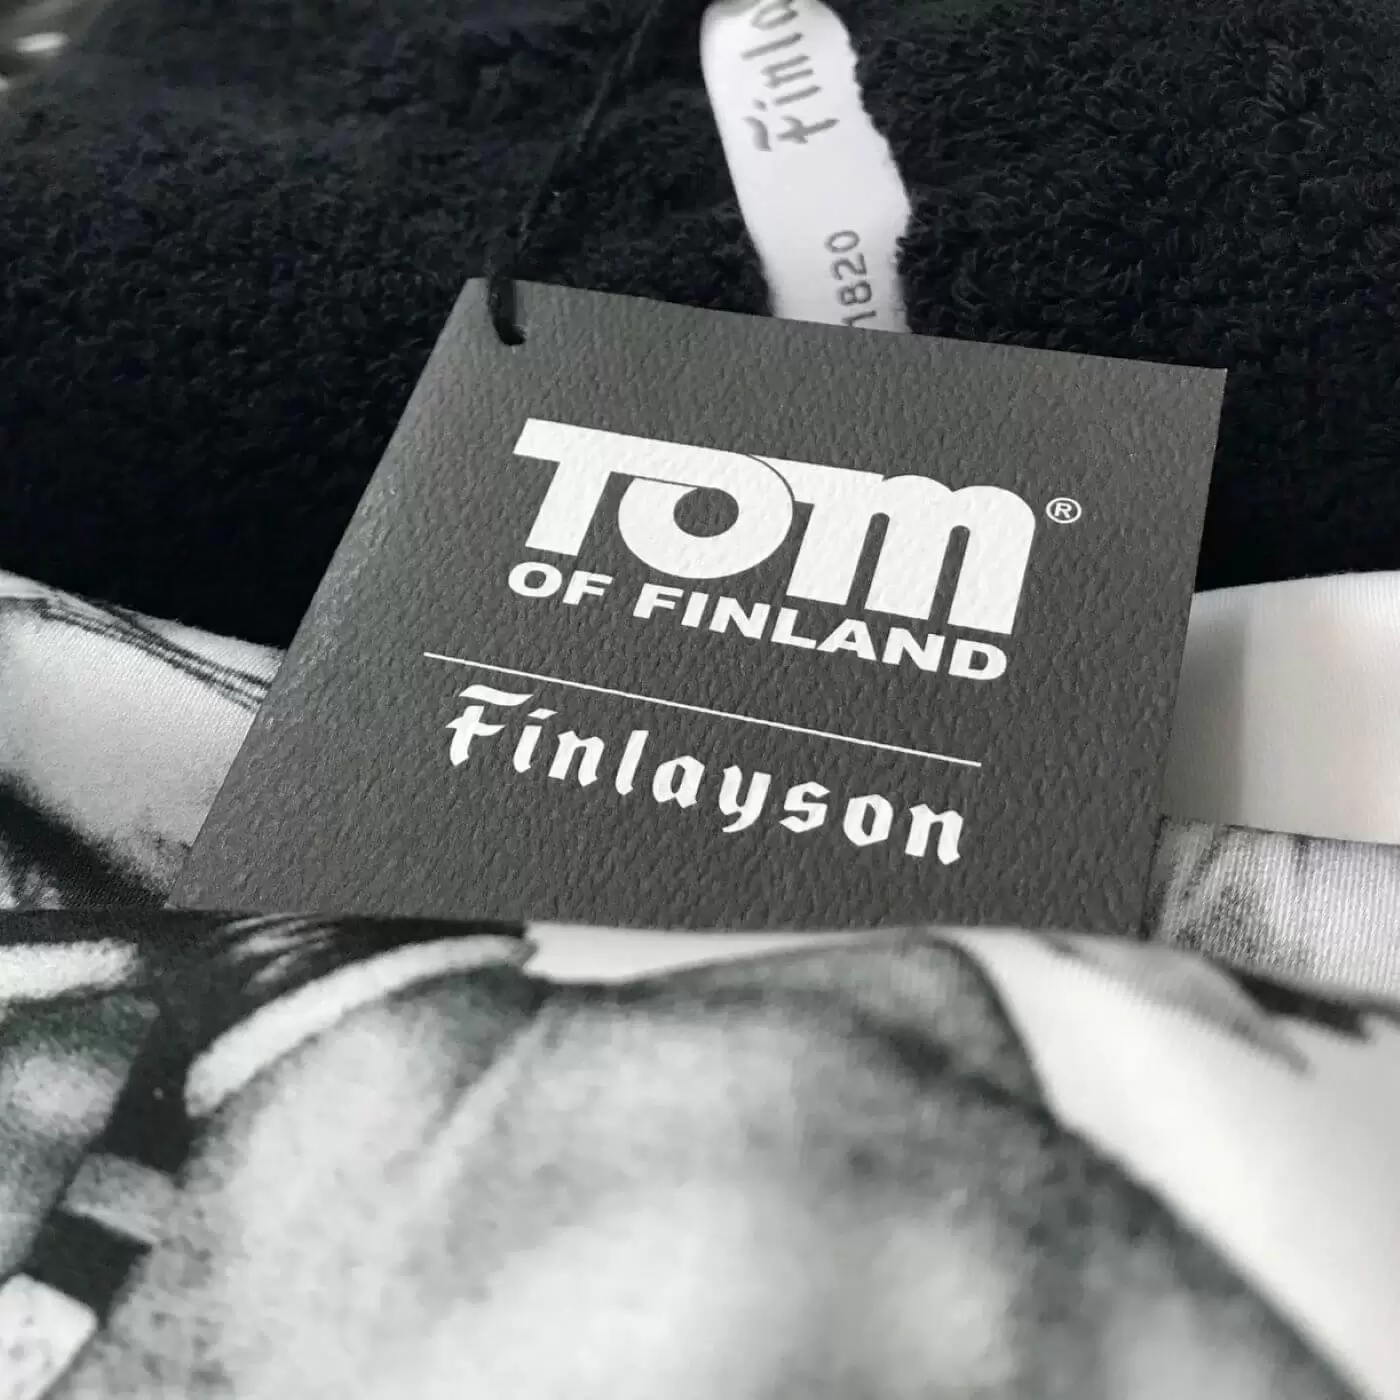 Pościel satynowa TOM OF FINLAND. Metka produktów tekstylnych dla kolekcji Tom of Finland skandynawskiej firmy Finlayson